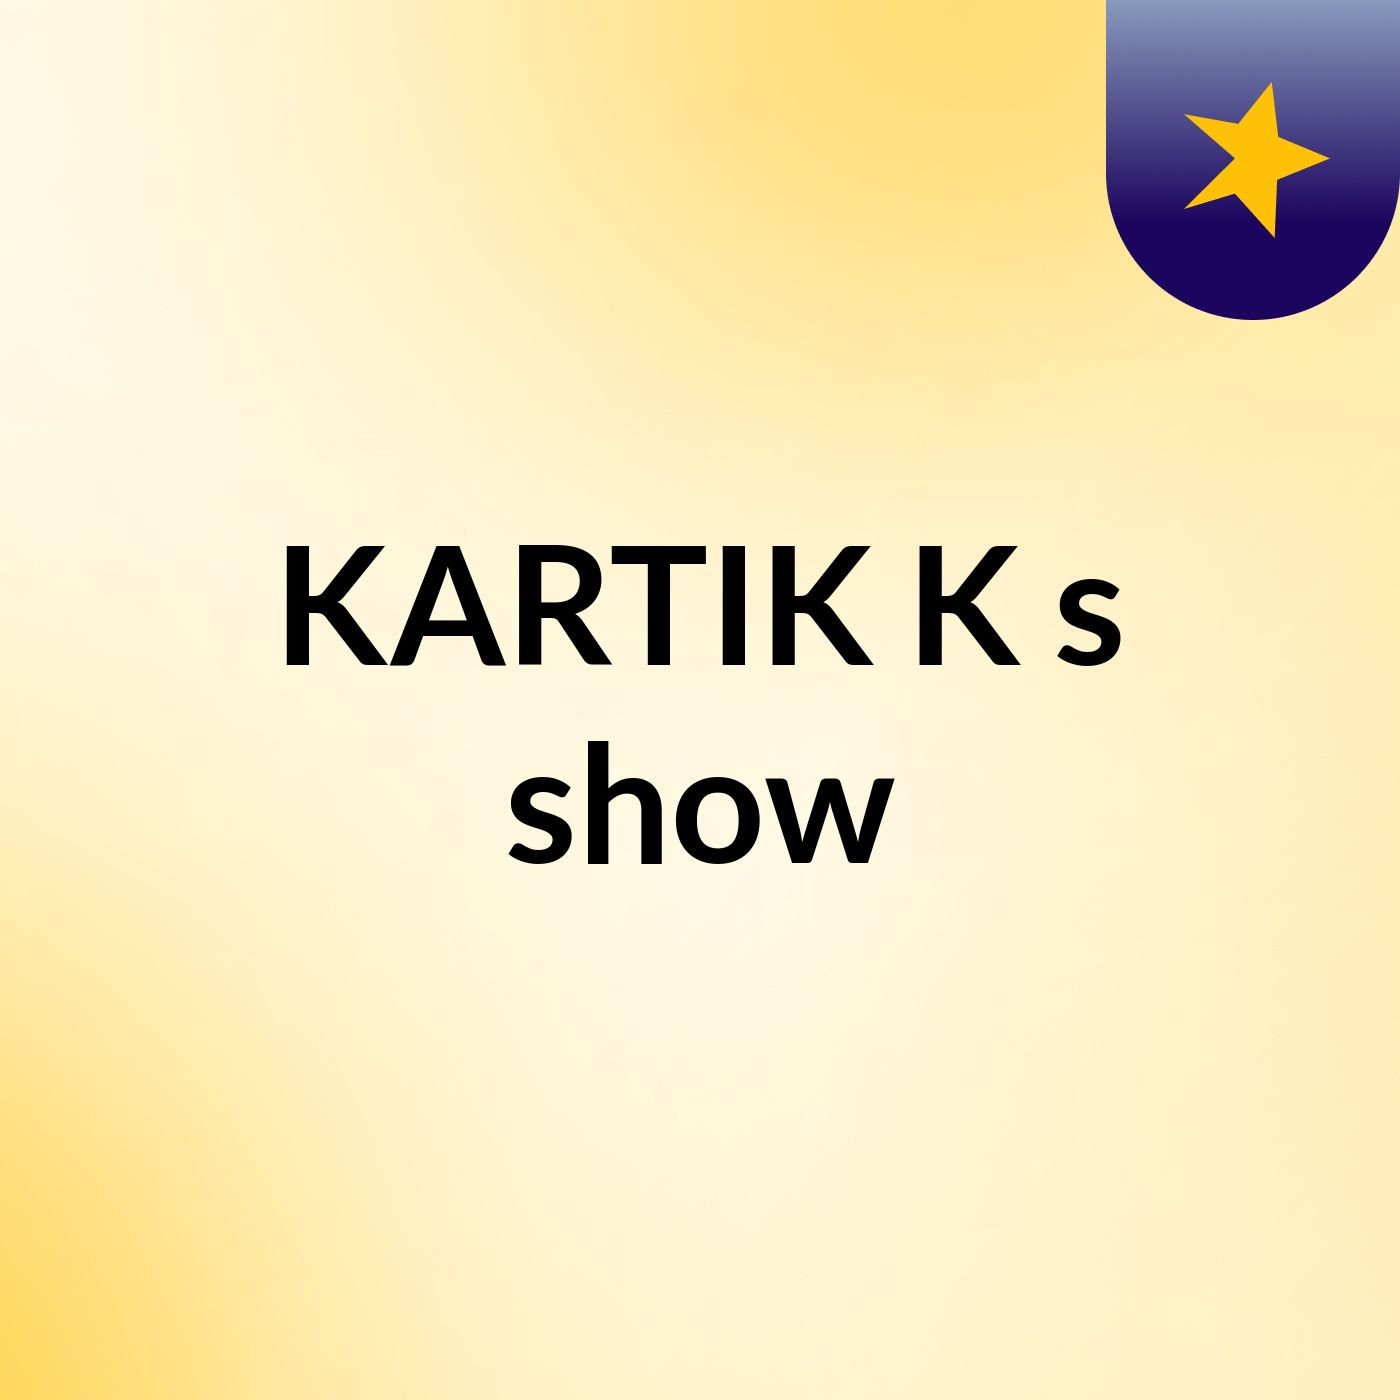 KARTIK K's show